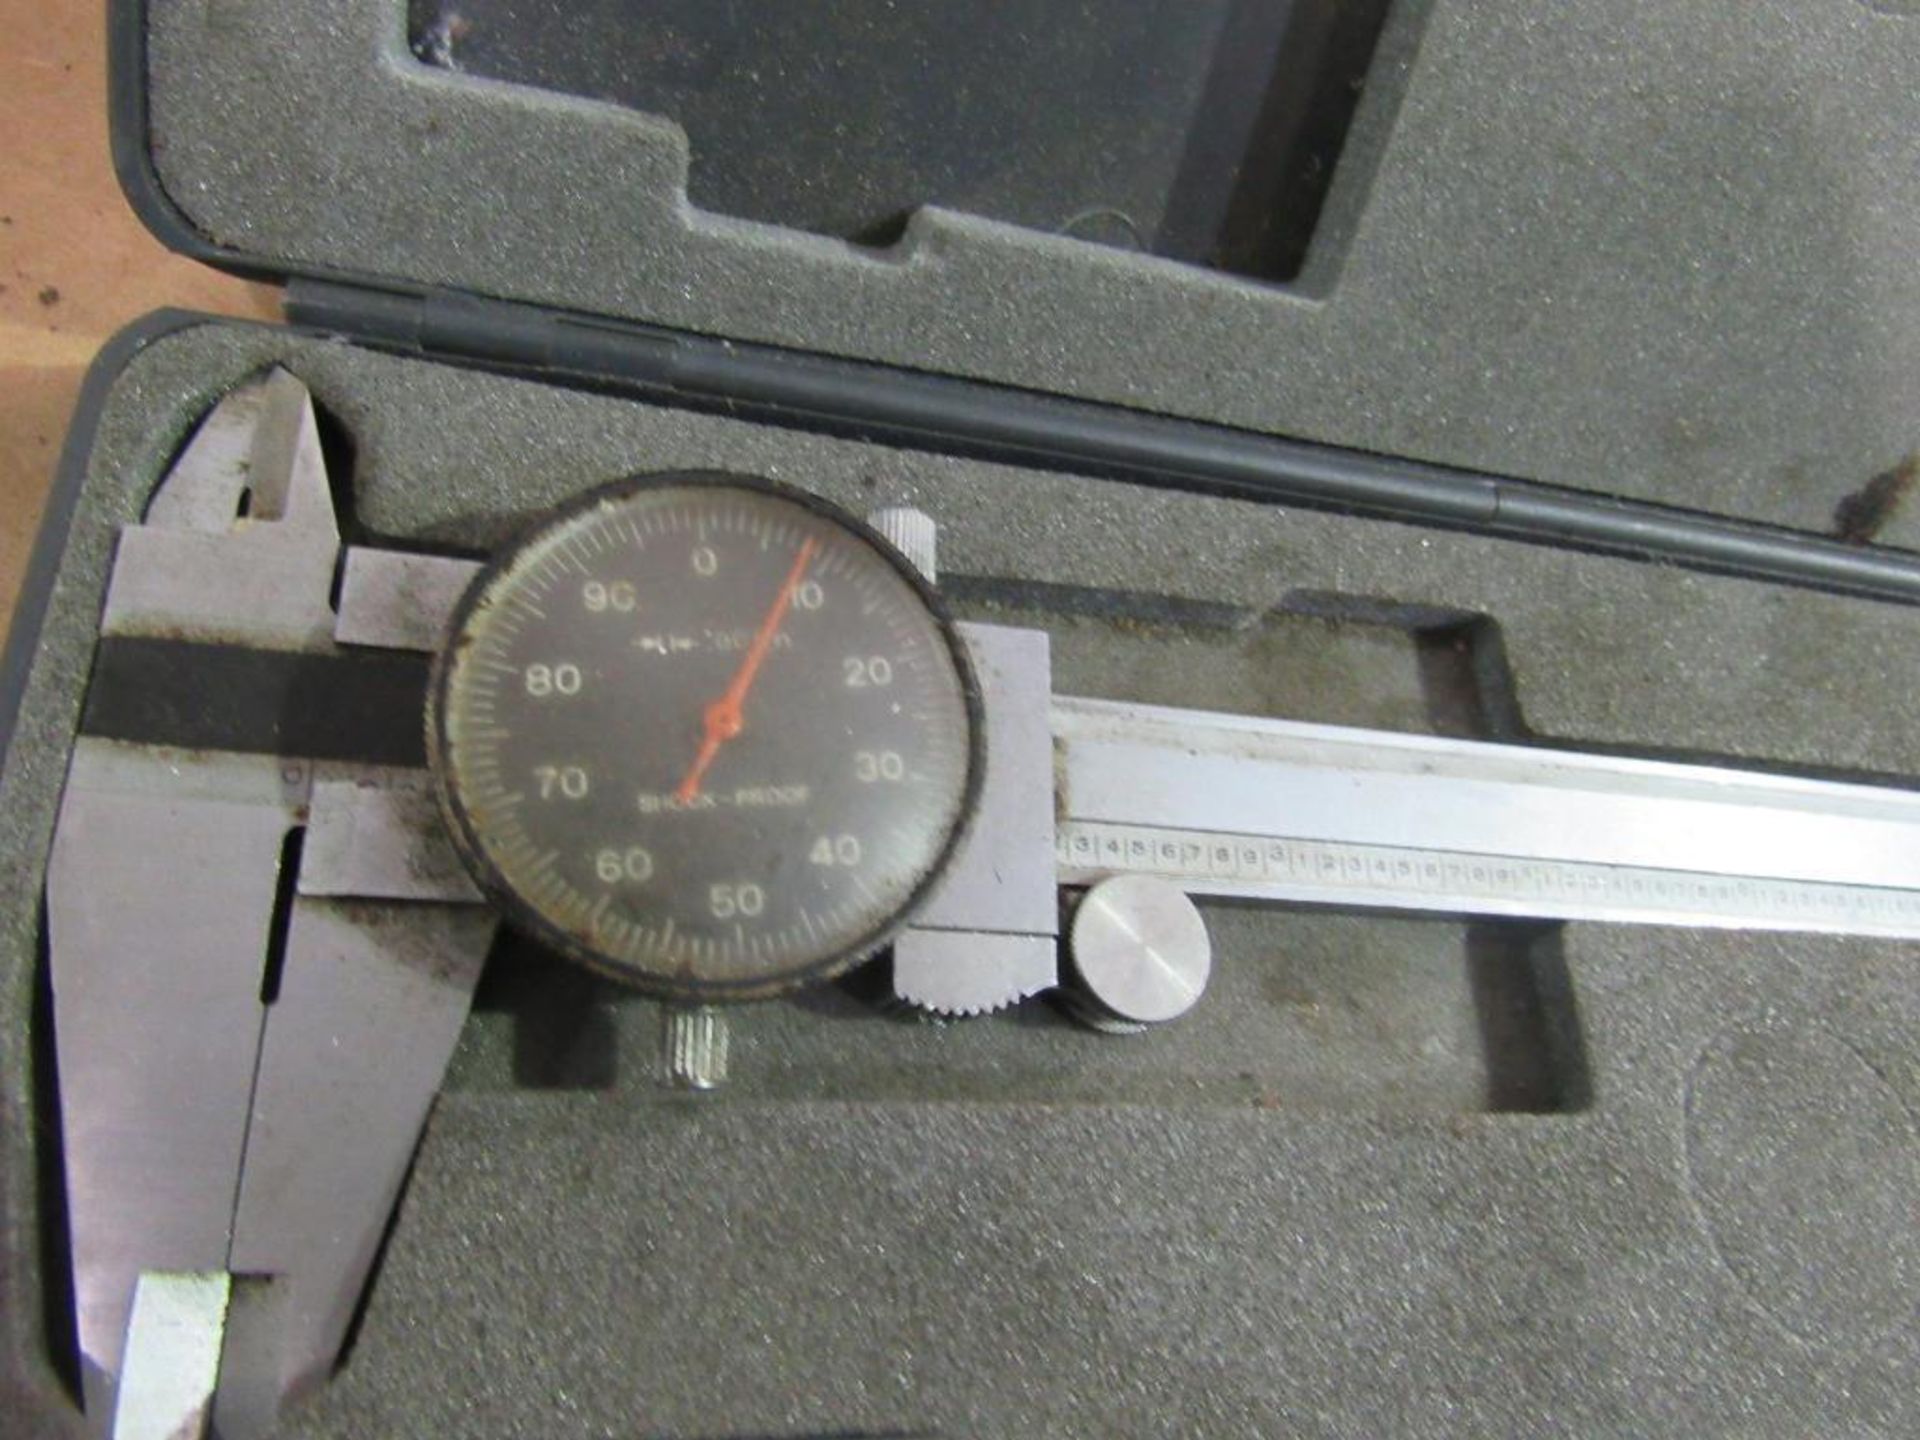 Lot of 2: (1) Mitutoyo Micrometer, 0" - 1", (1) Vernier Caliper, 6" - Image 4 of 4